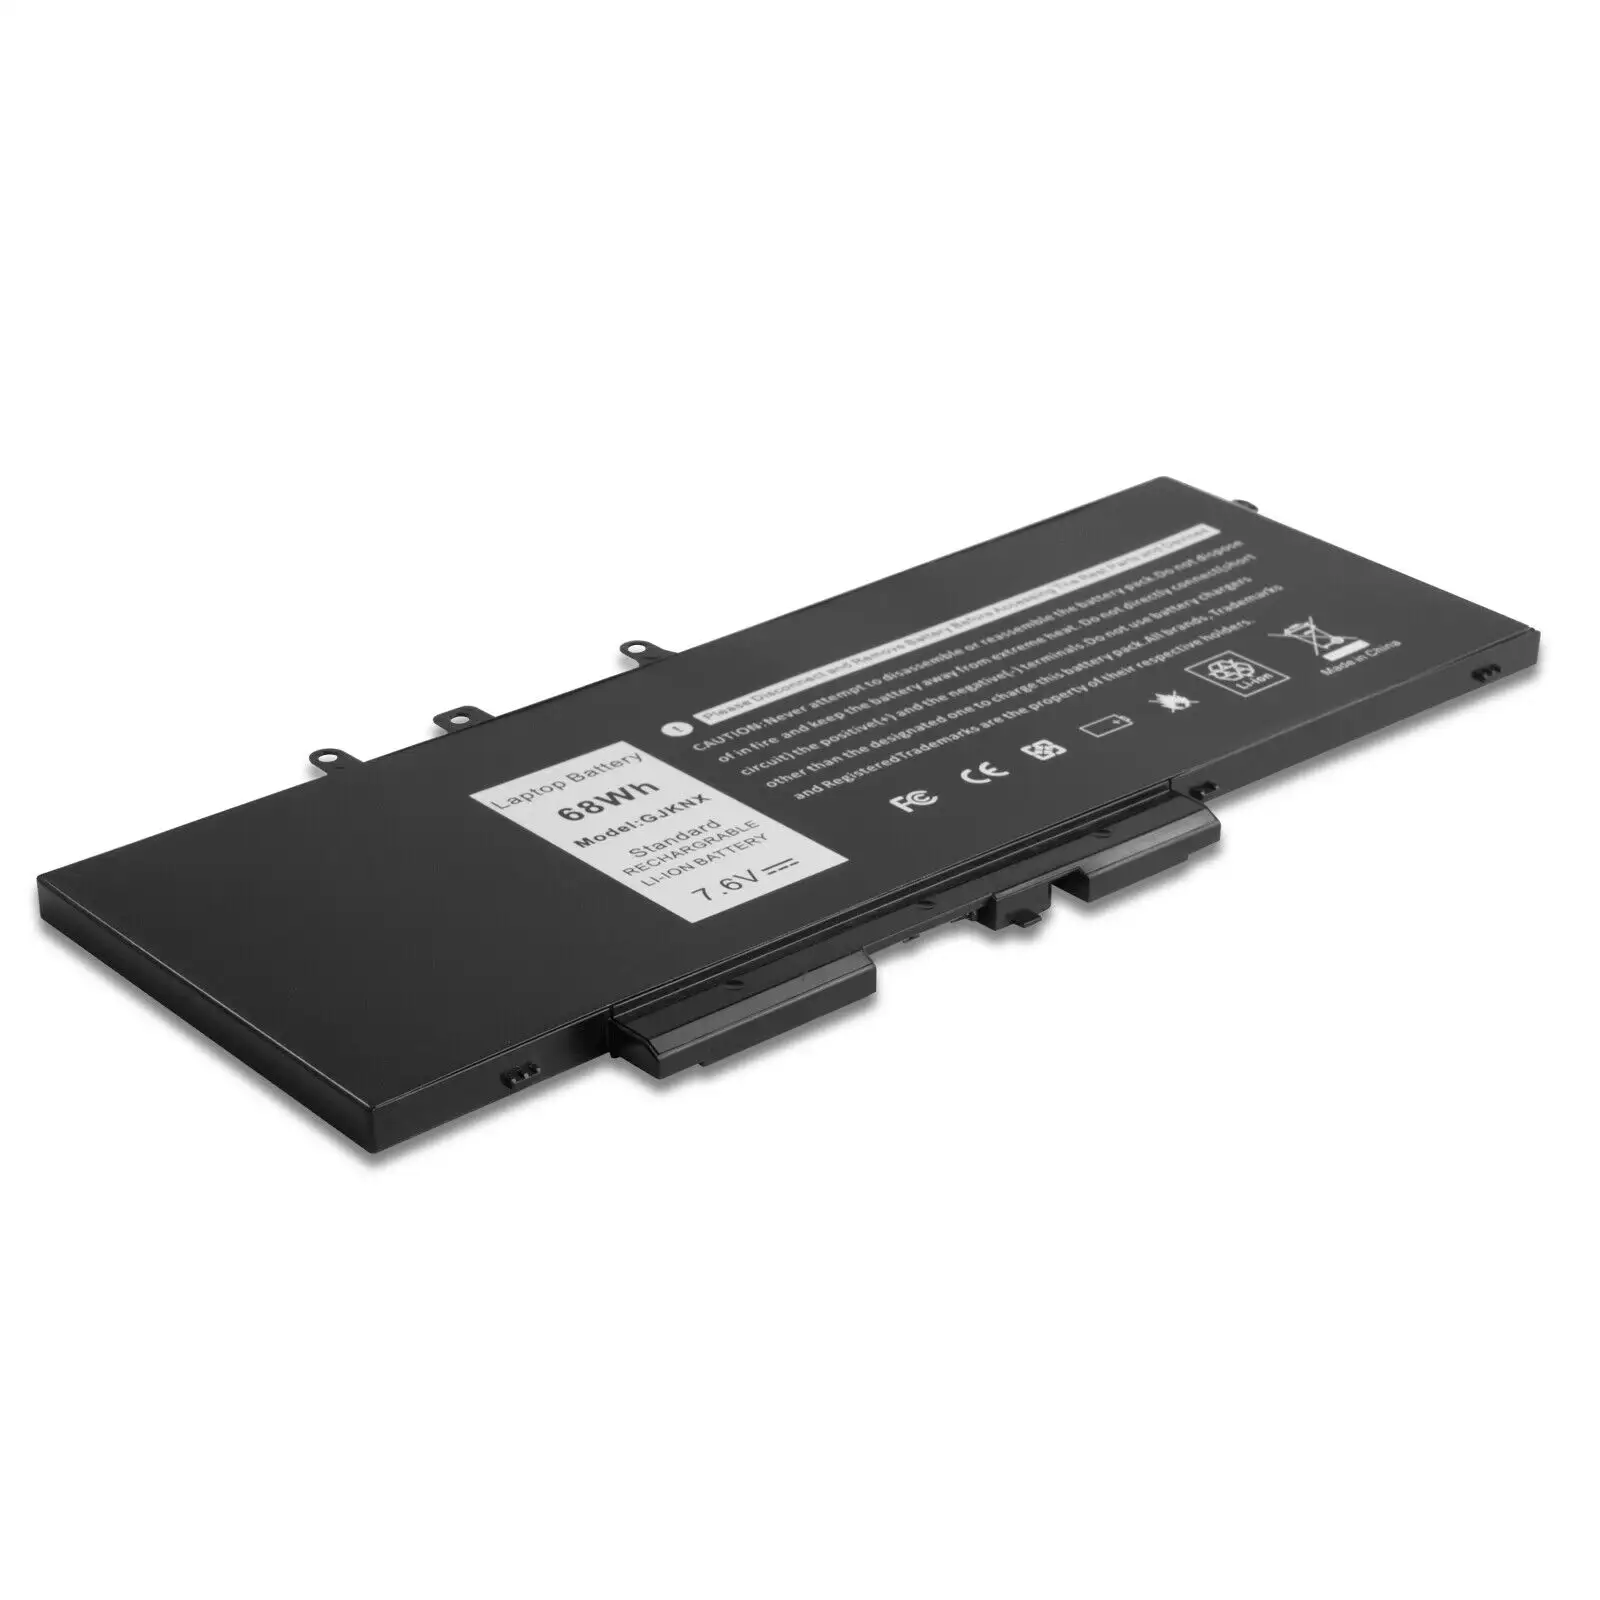 GJKNX Laptop Battery Compatible with Dell Precision 15 3520 Latitude E5480 E5580 E5490 E5590